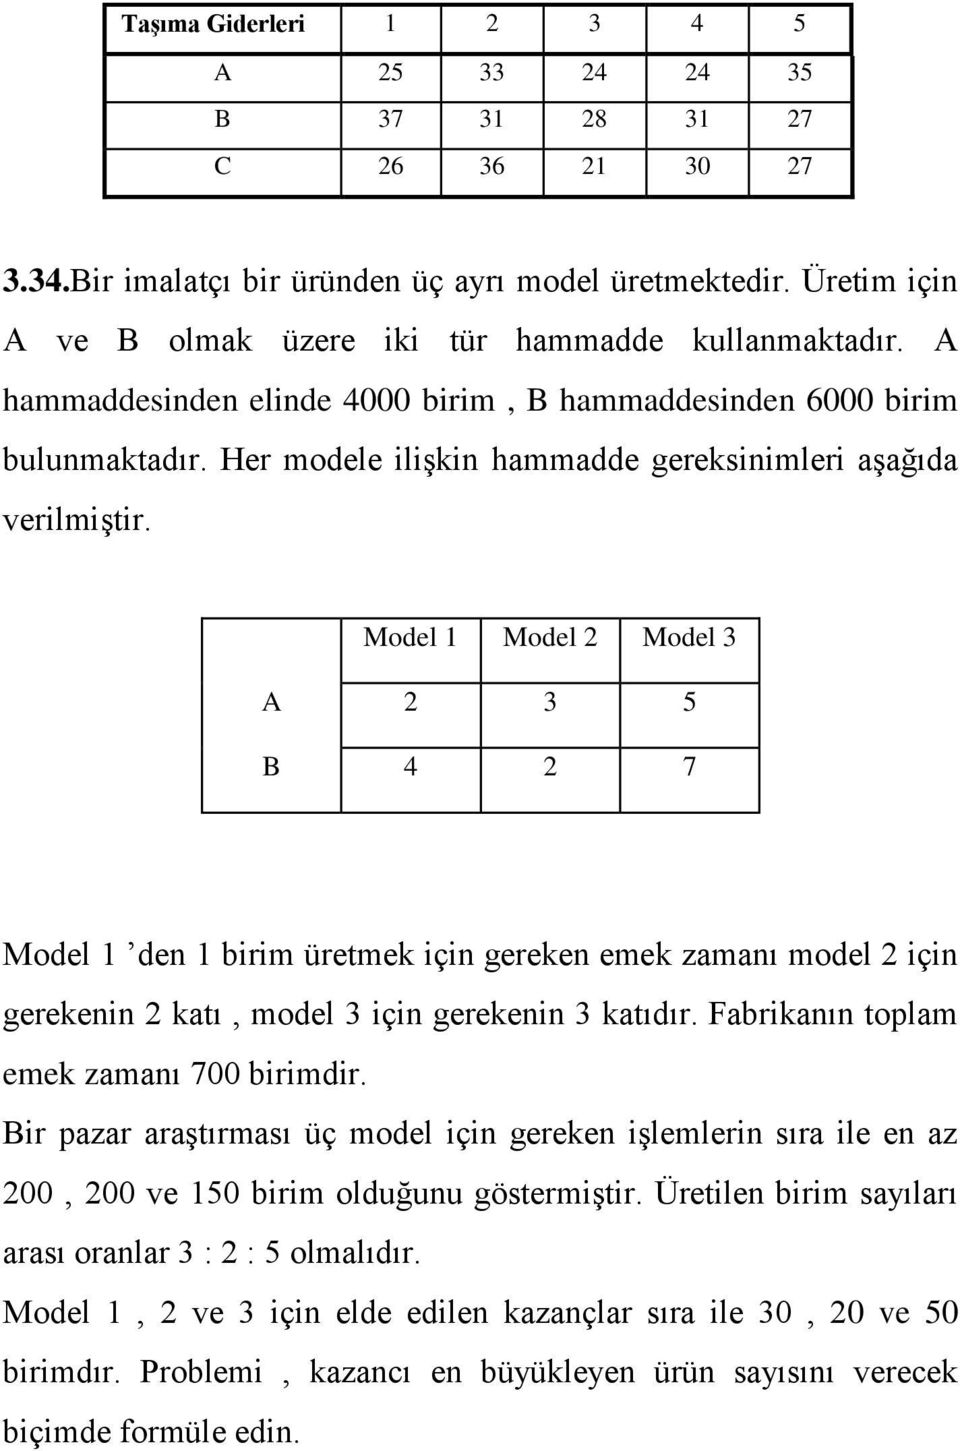 Model 1 Model 2 Model 3 A 2 3 5 B 4 2 7 Model 1 den 1 birim üretmek için gereken emek zamanı model 2 için gerekenin 2 katı, model 3 için gerekenin 3 katıdır.